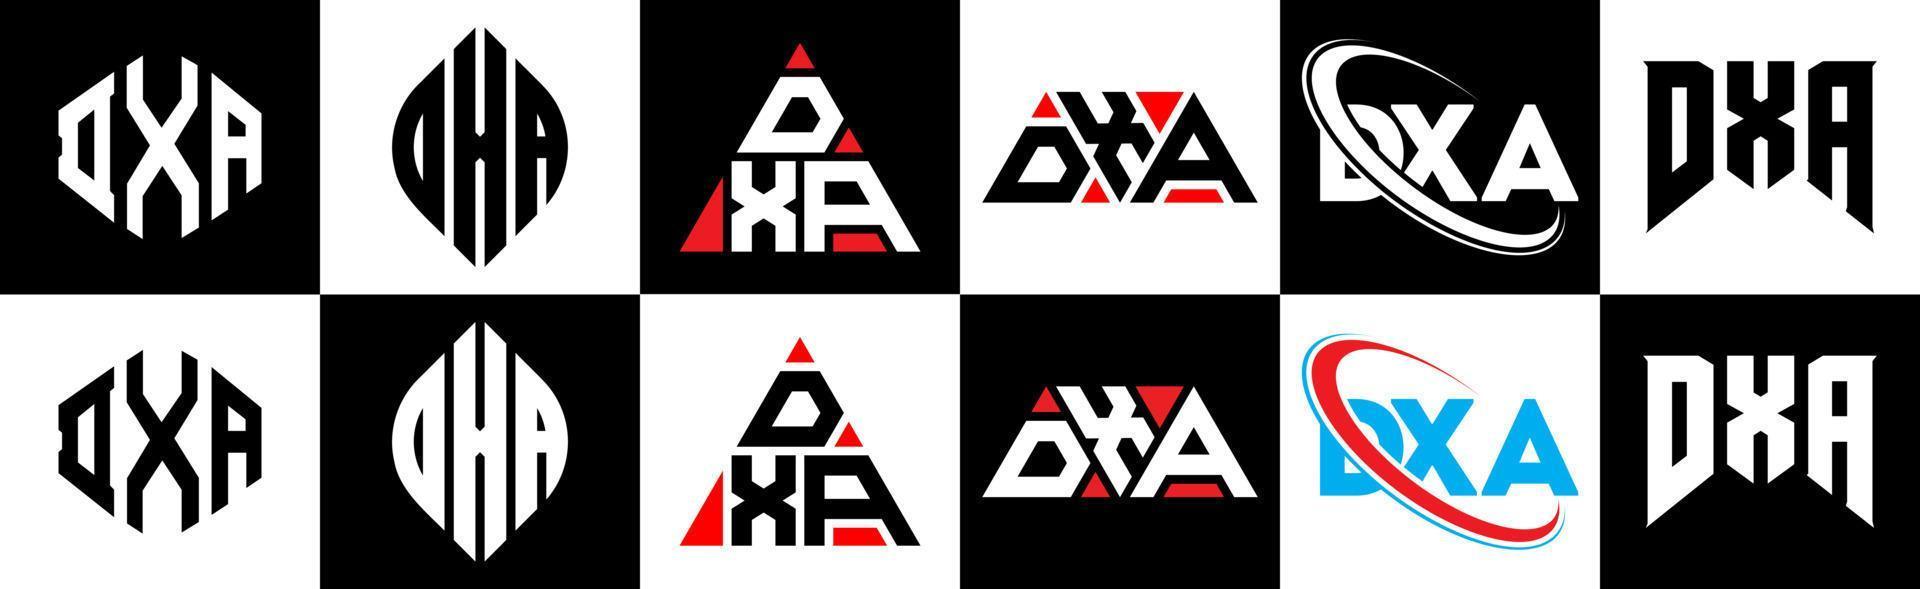 dxa-Buchstaben-Logo-Design in sechs Stilen. DXA-Polygon, Kreis, Dreieck, Sechseck, flacher und einfacher Stil mit schwarz-weißem Buchstabenlogo in einer Zeichenfläche. dxa minimalistisches und klassisches Logo vektor